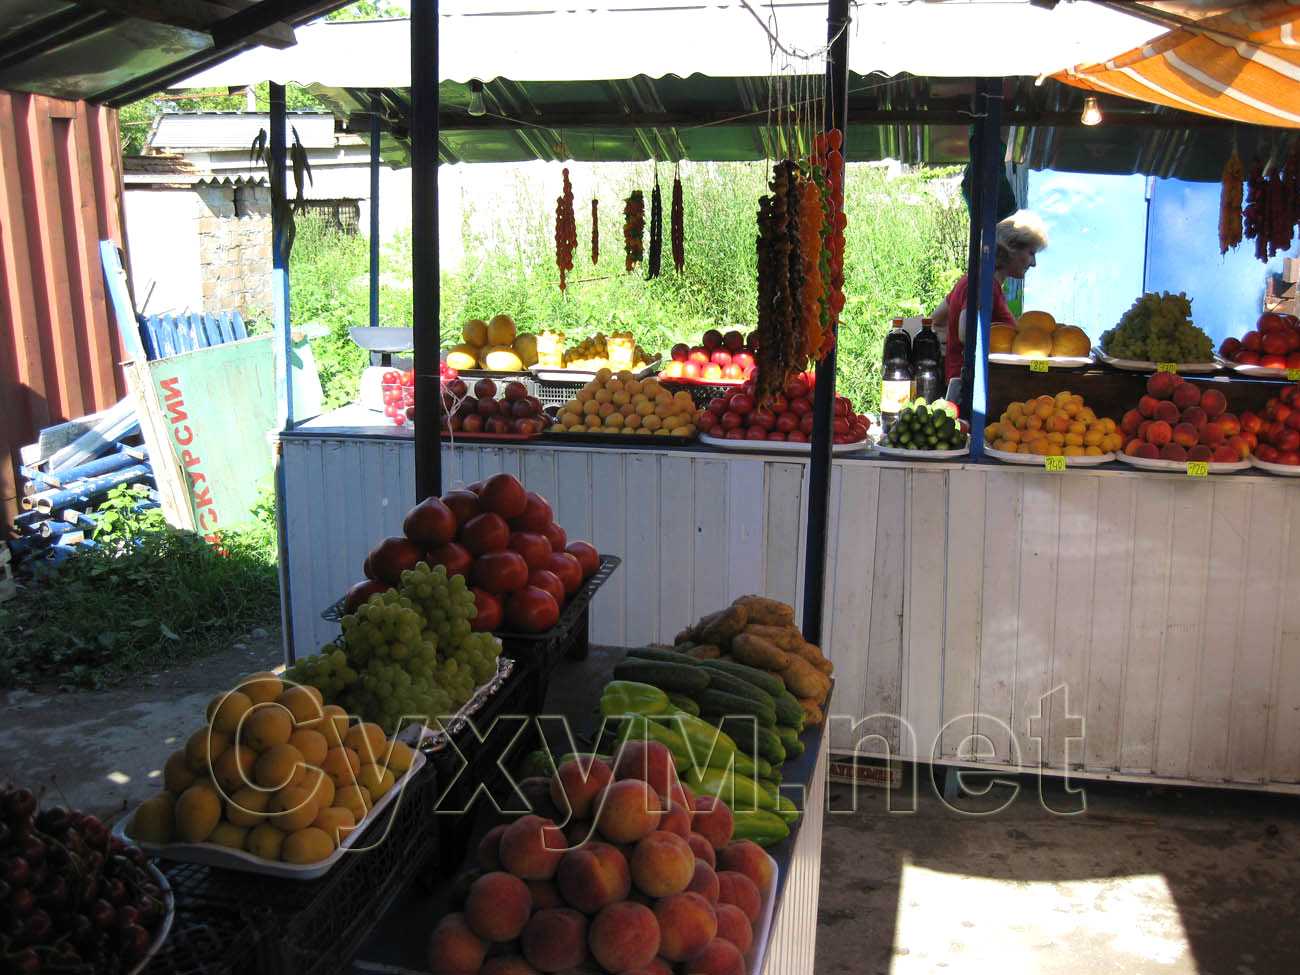 овощи и фрукты колхозного рынка на ул. акиртава